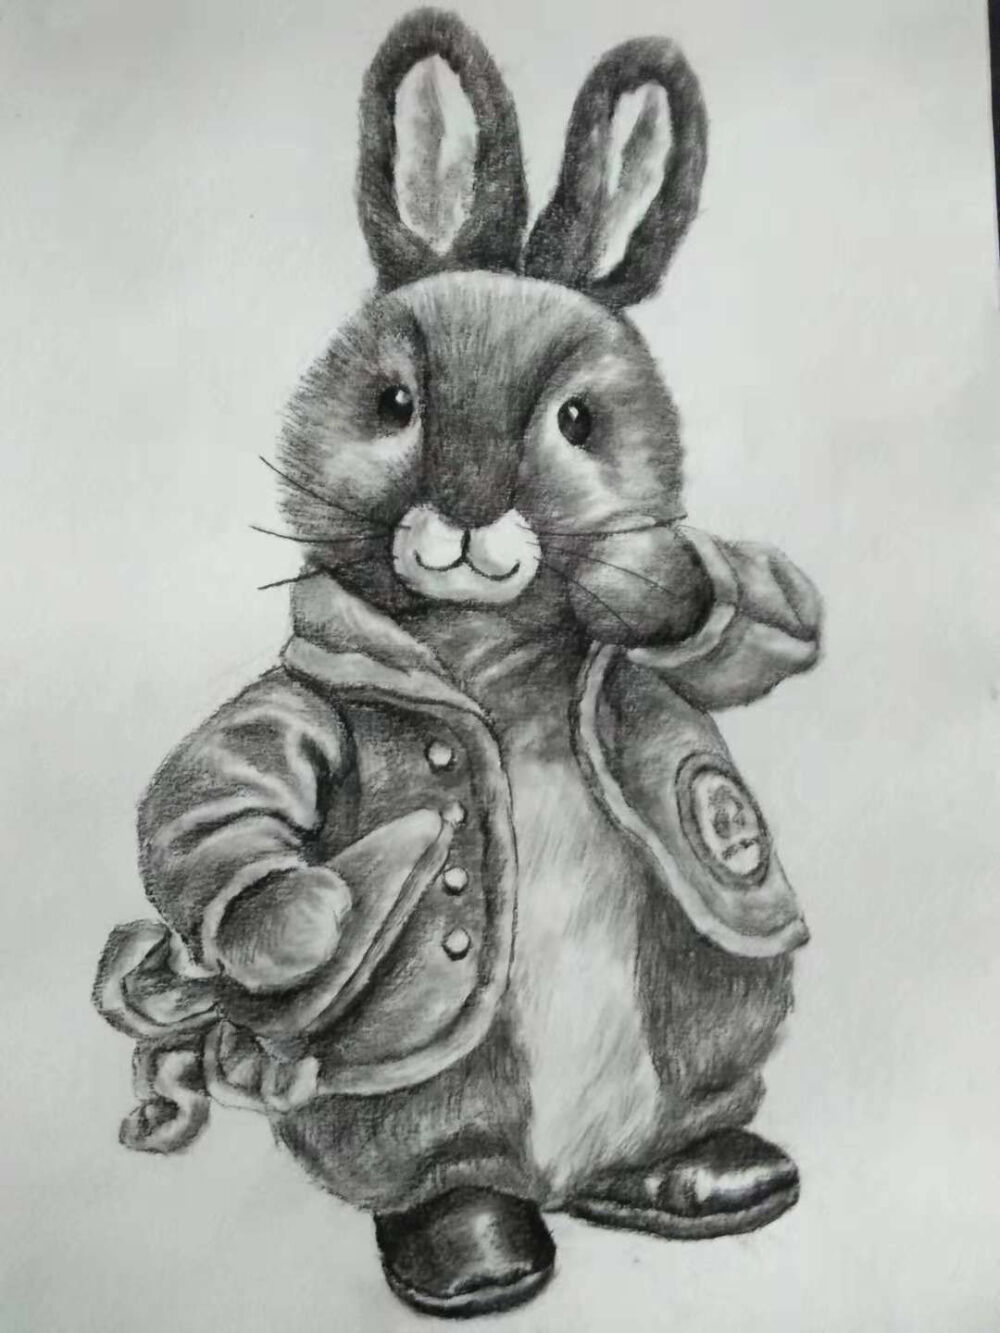 儿童画 创意素描 写生 速写 炭笔画 毛绒玩具 兔子古董电话 锤子 帽子 鸭舌帽